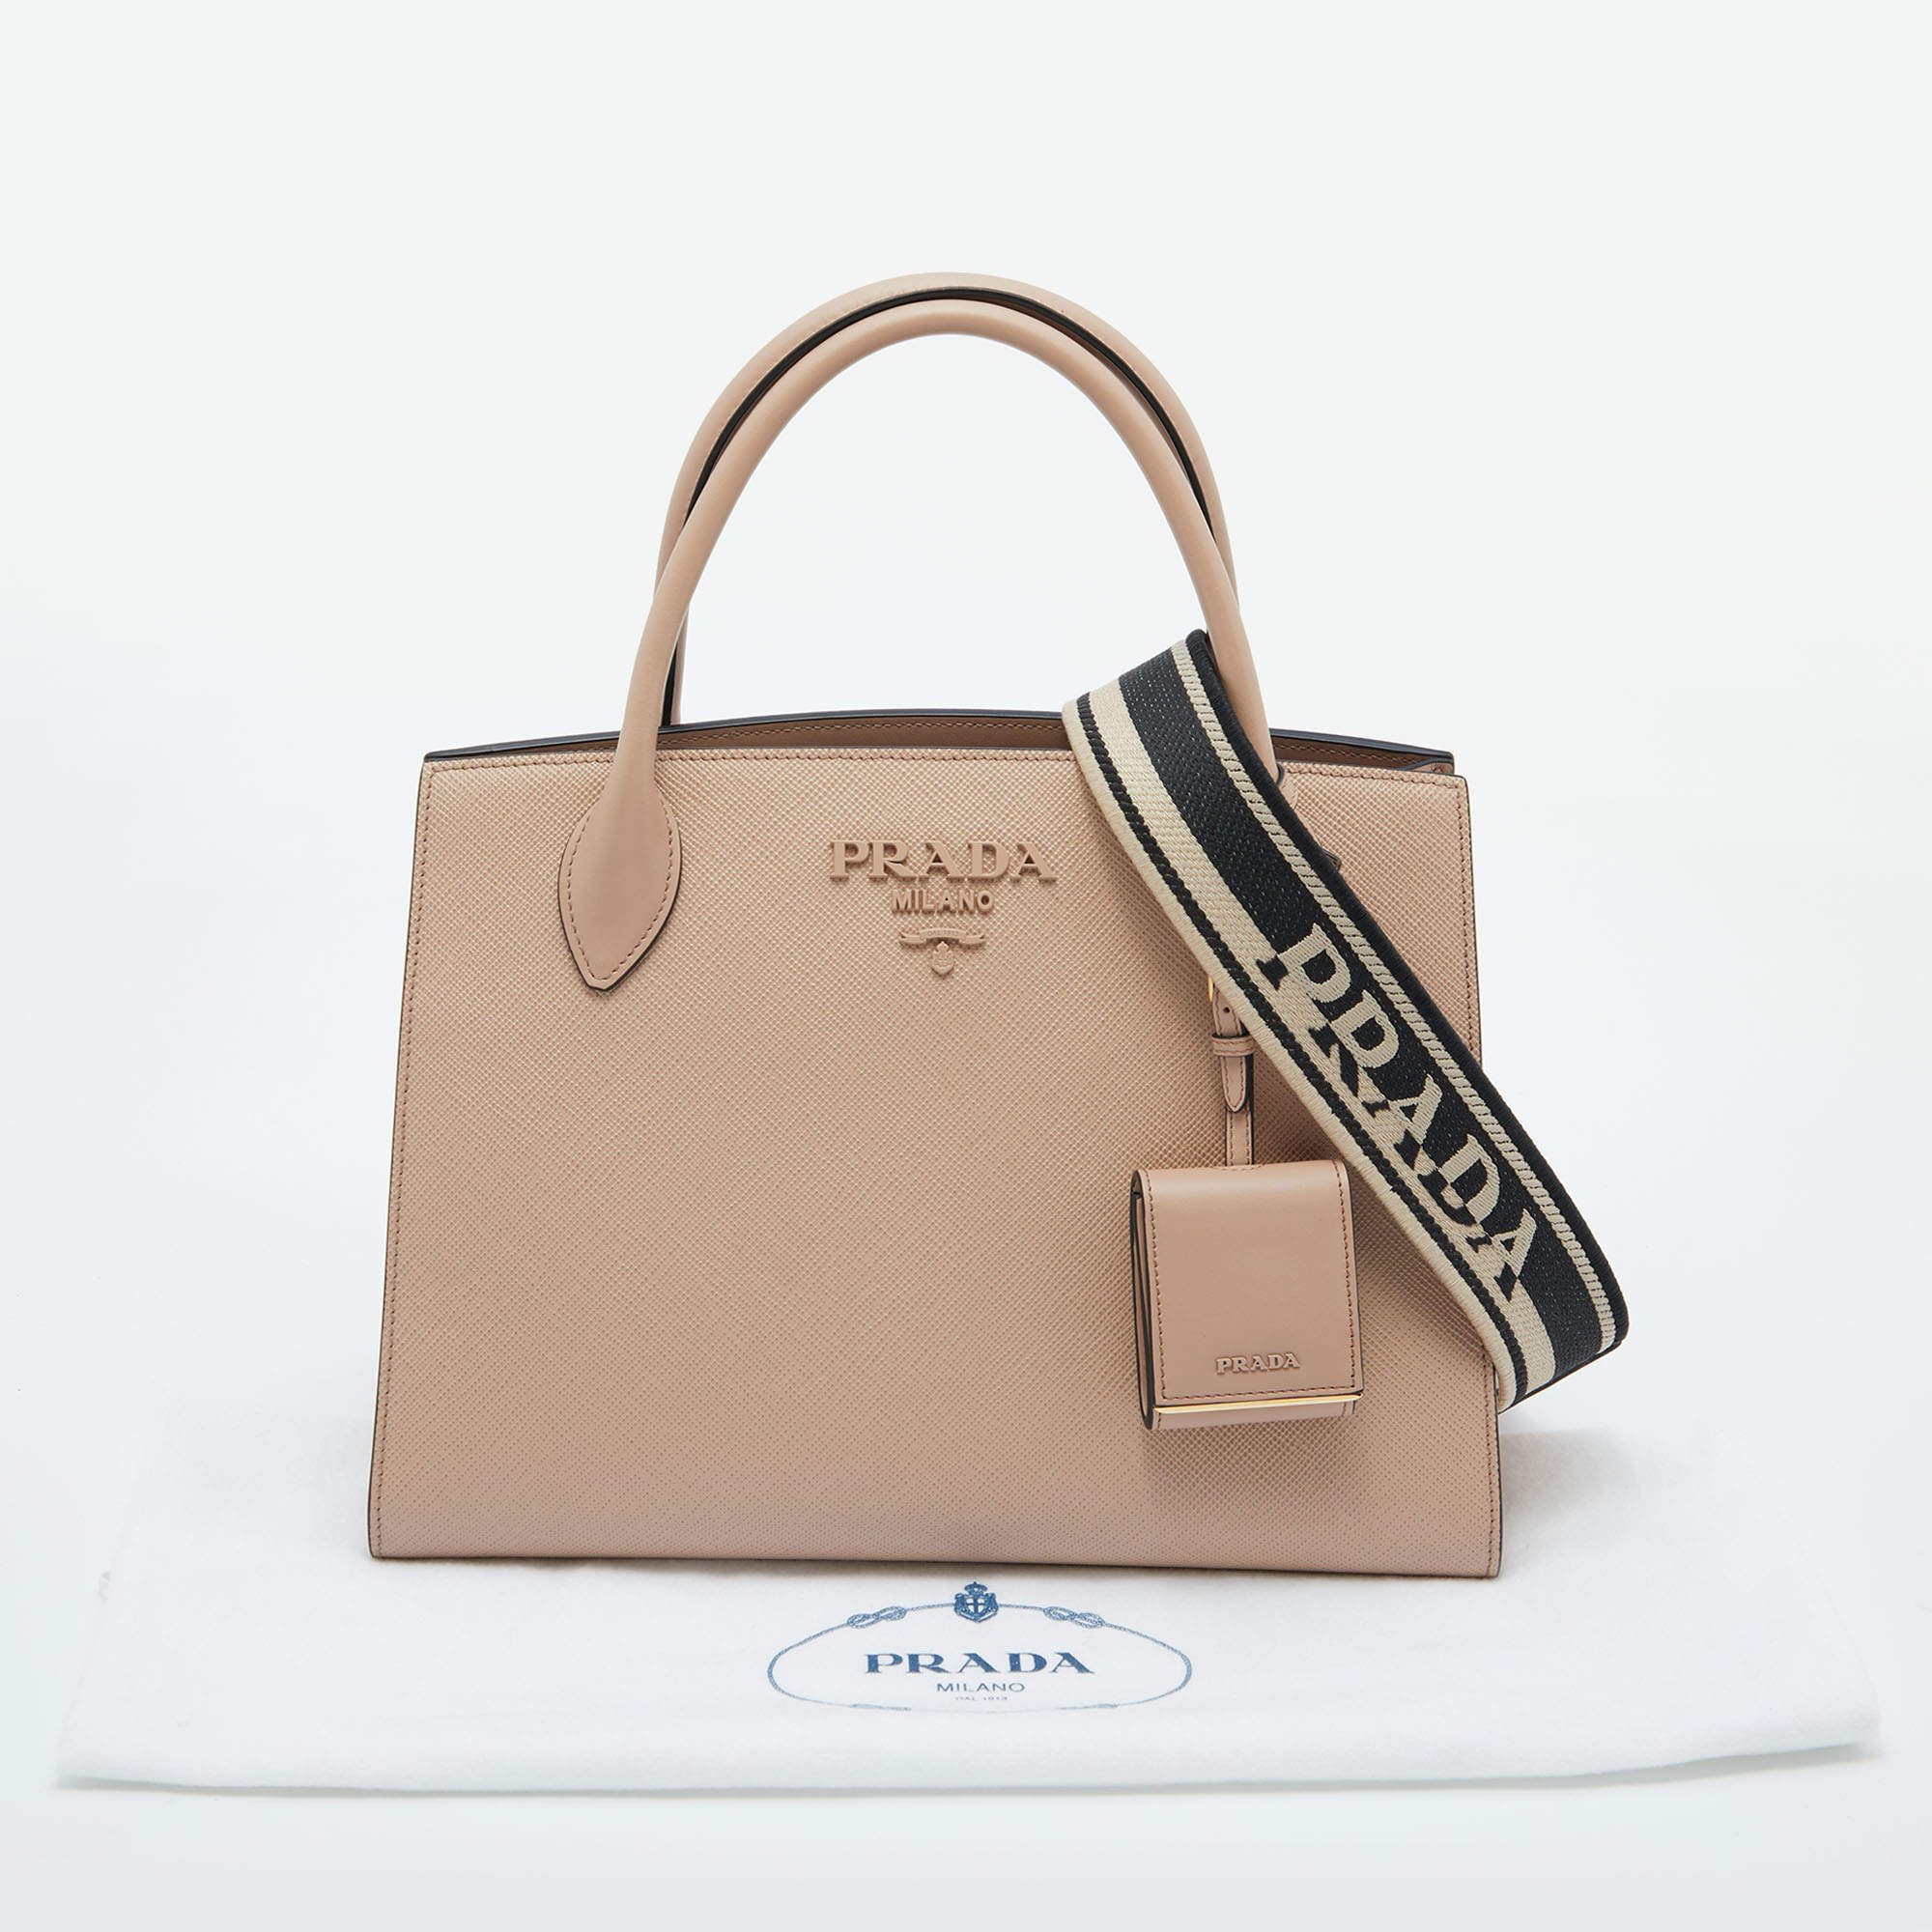 Prada - Monochrome Cipria Saffiano Leather Small Bag